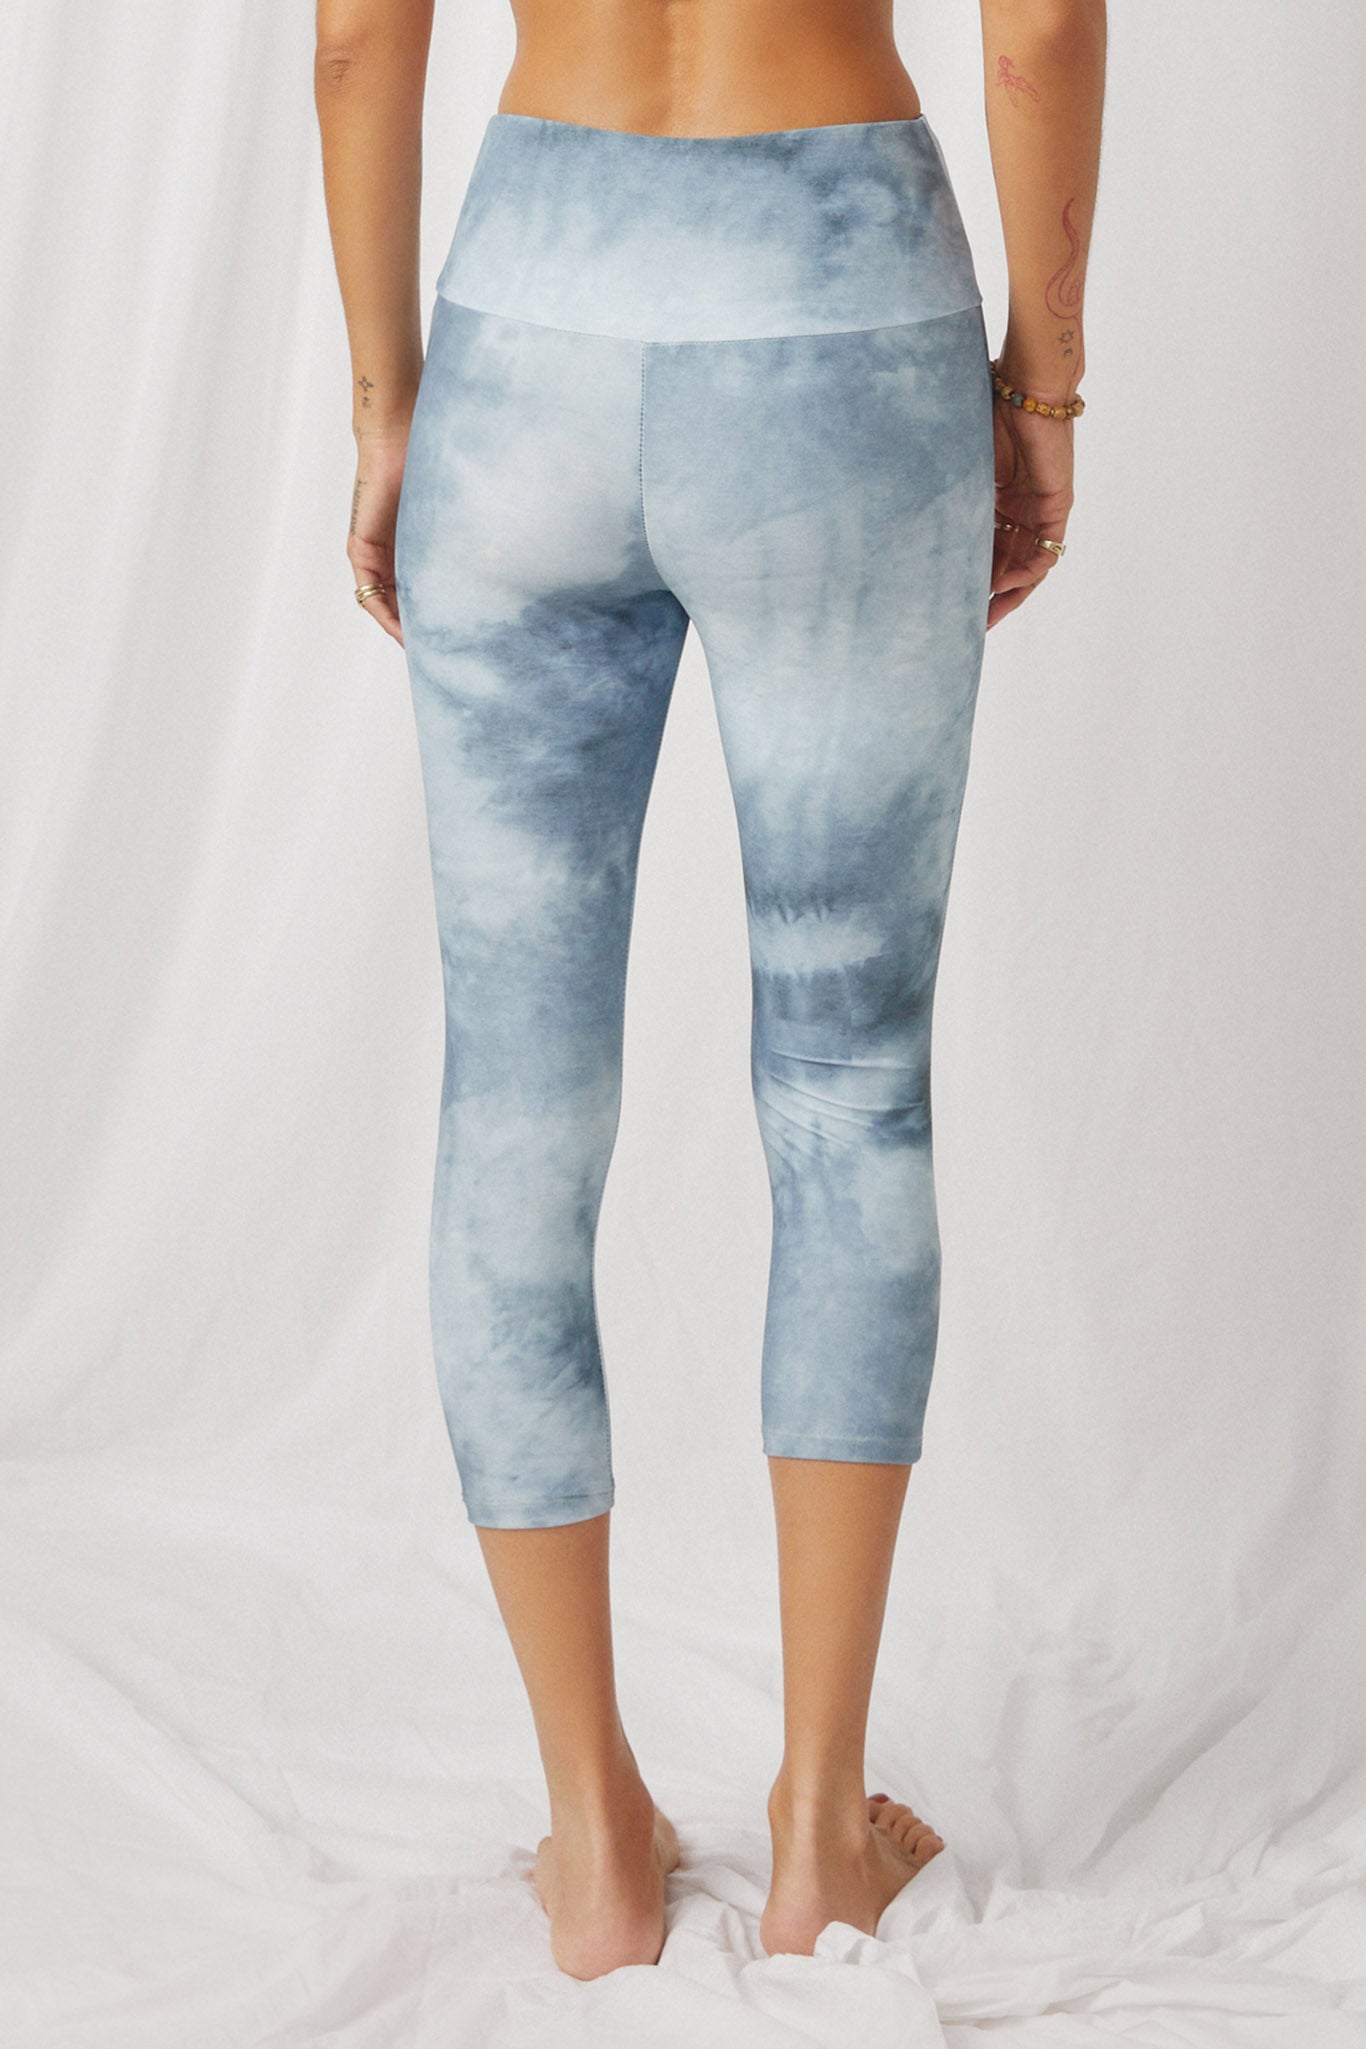 HY2912 Grey Womens Tie Dye Print Active Leggings Back